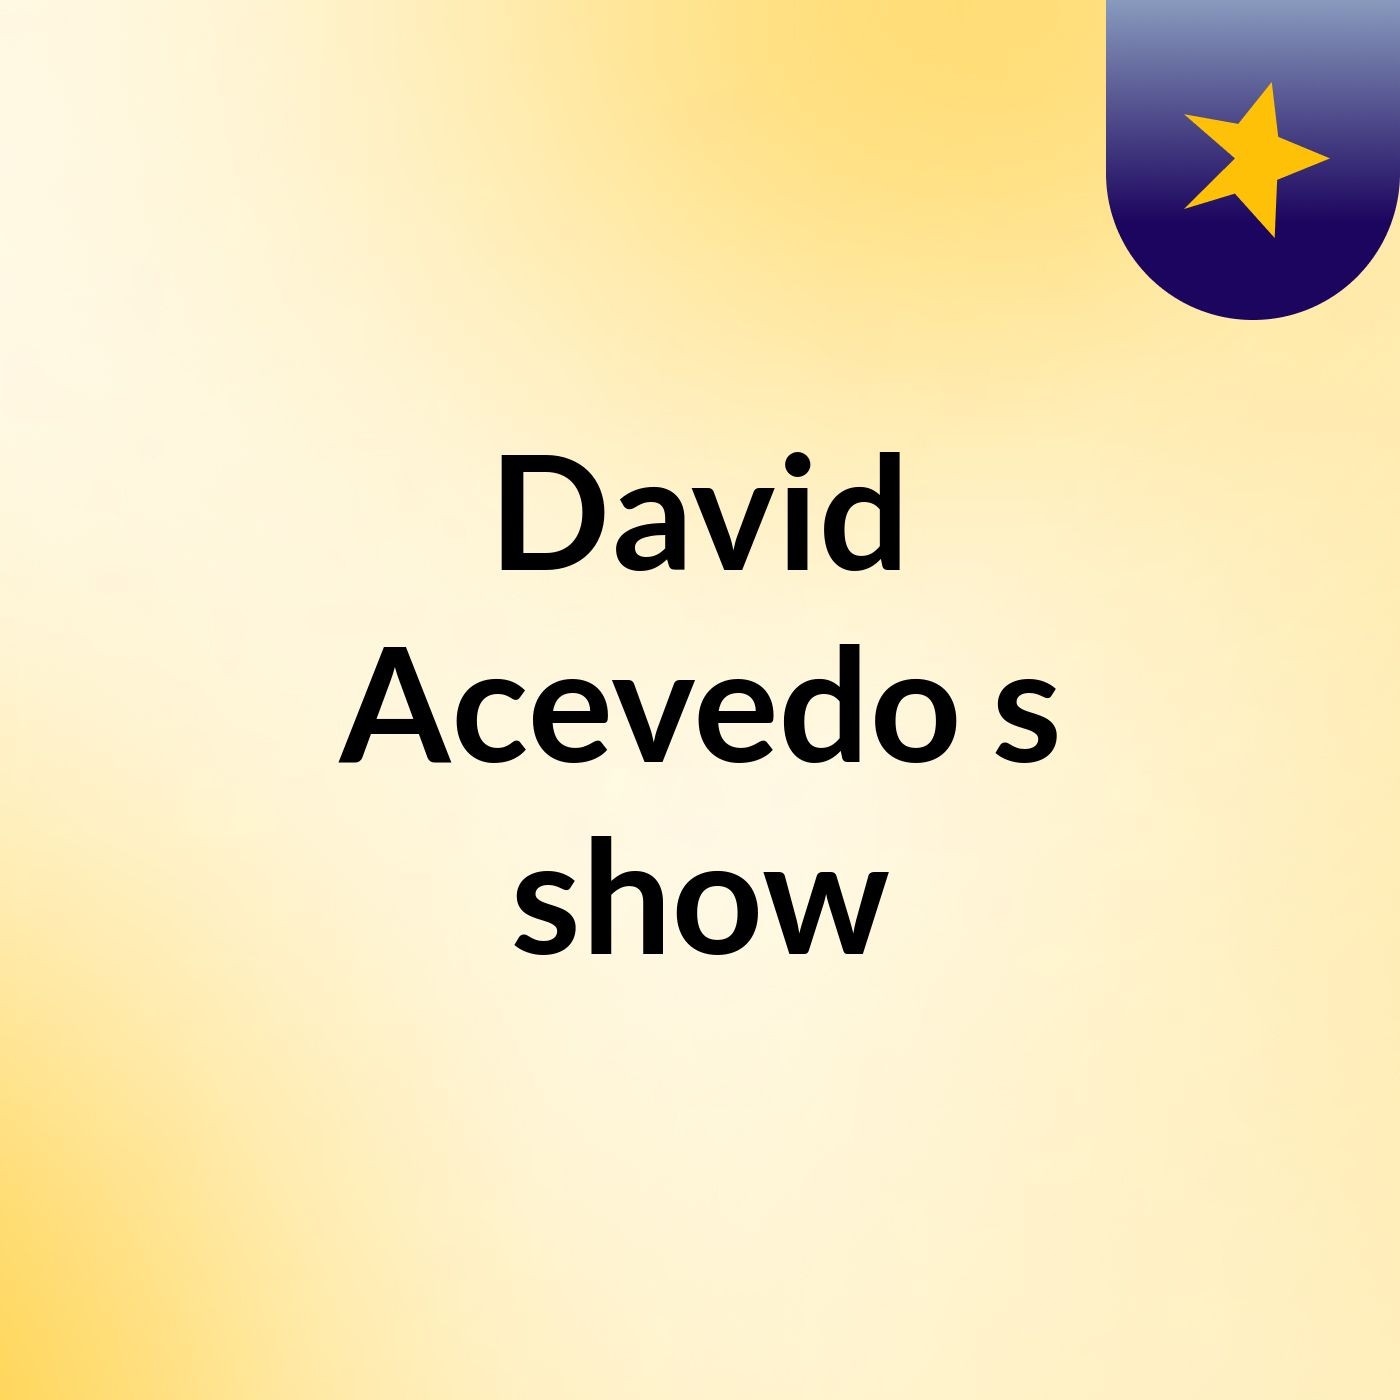 David Acevedo's show